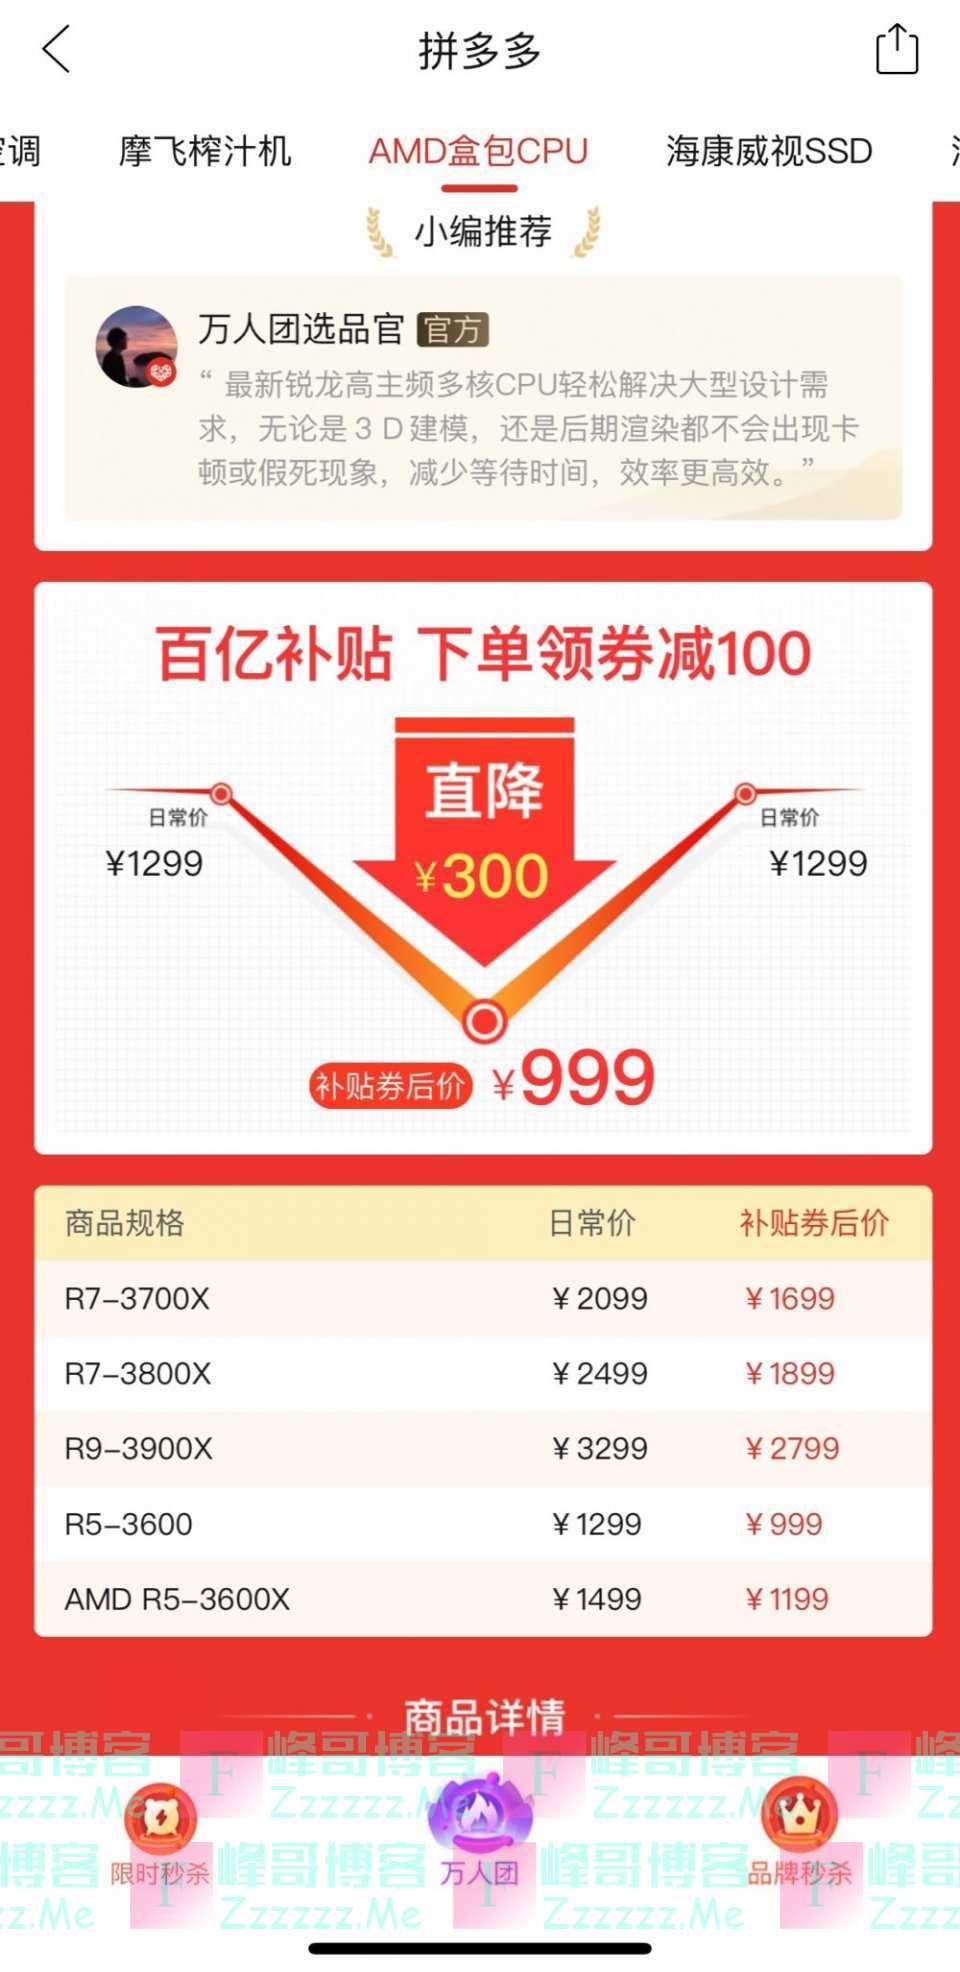 AMD三代锐龙创史上最低价 拼多多万人团低至999元